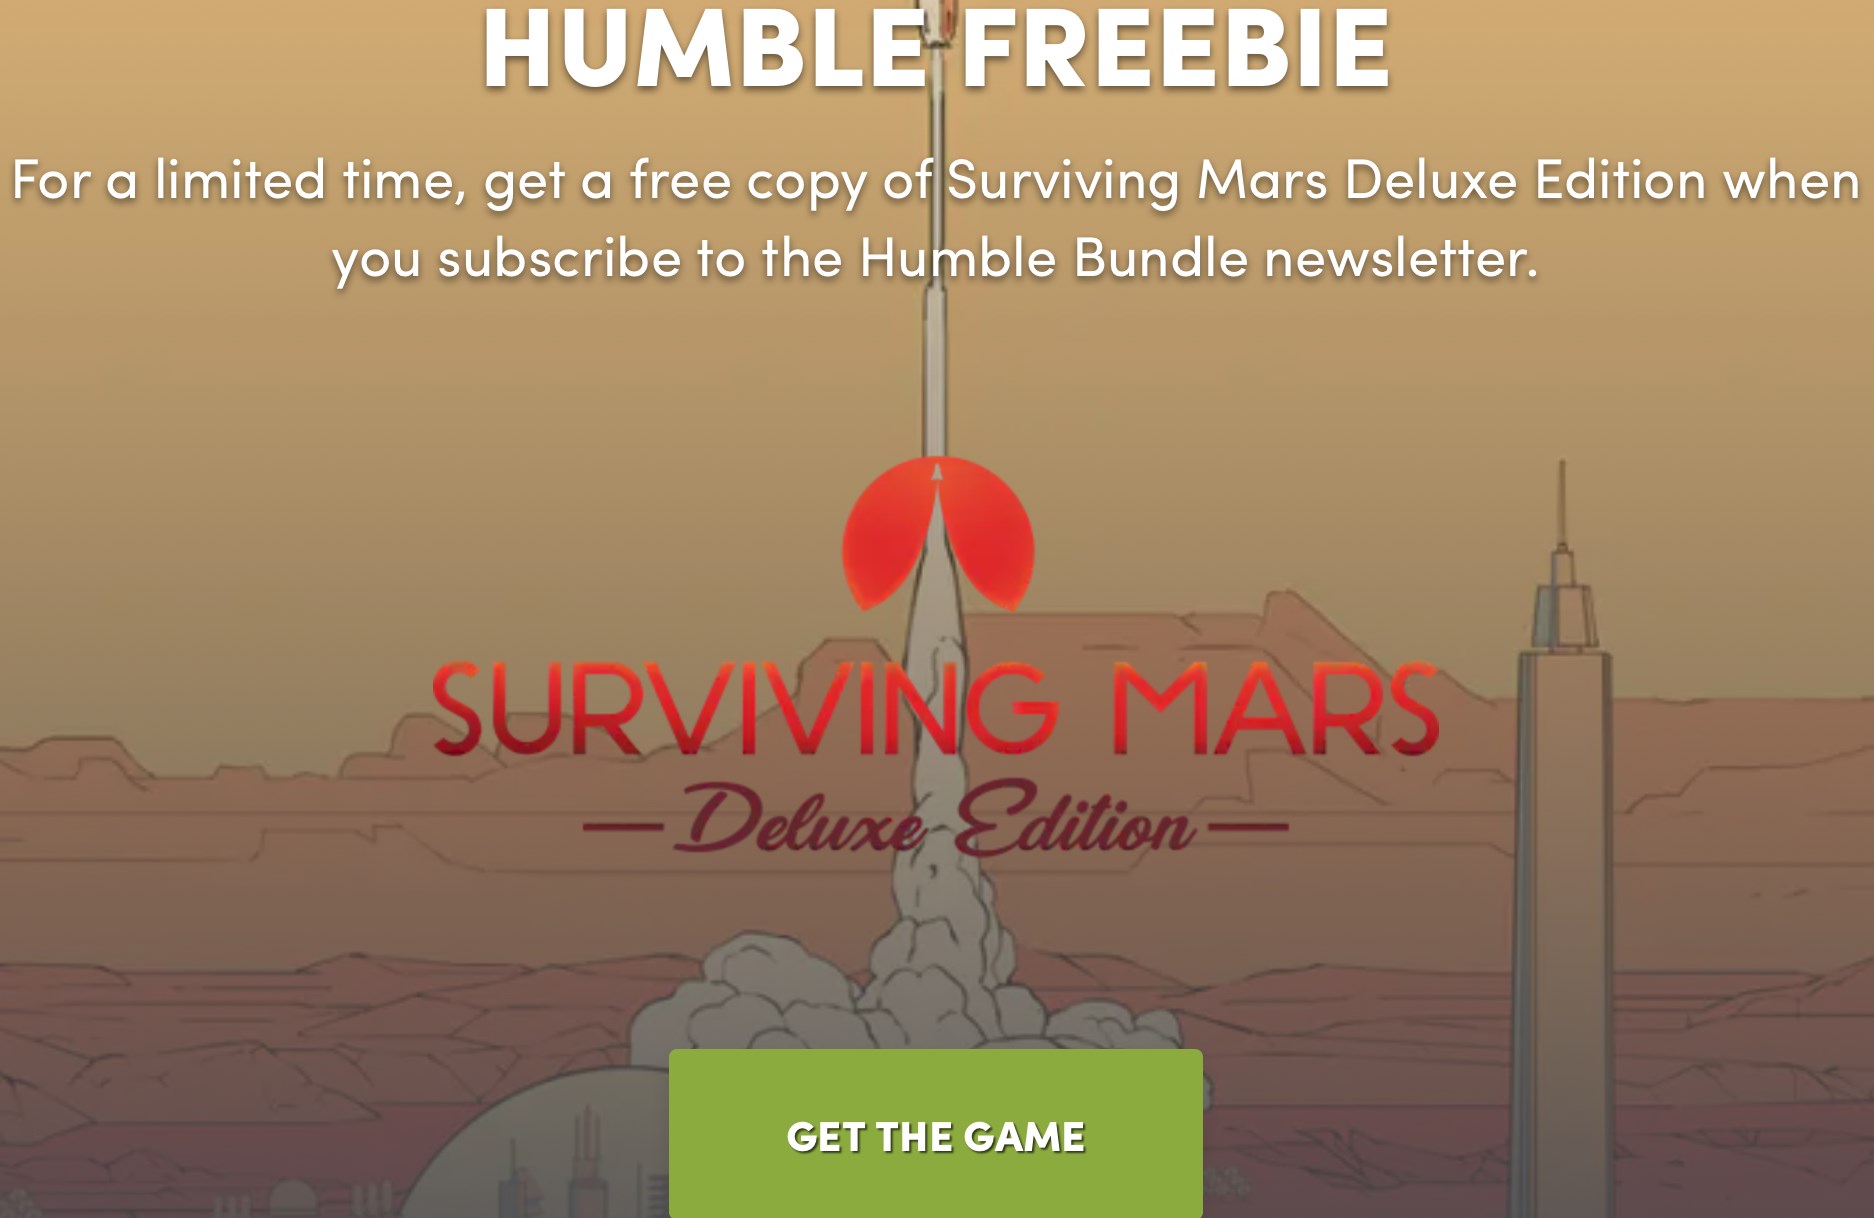 61 TL değerindeki Surviving Mars: Deluxe Edition oyunu ücretsiz oldu